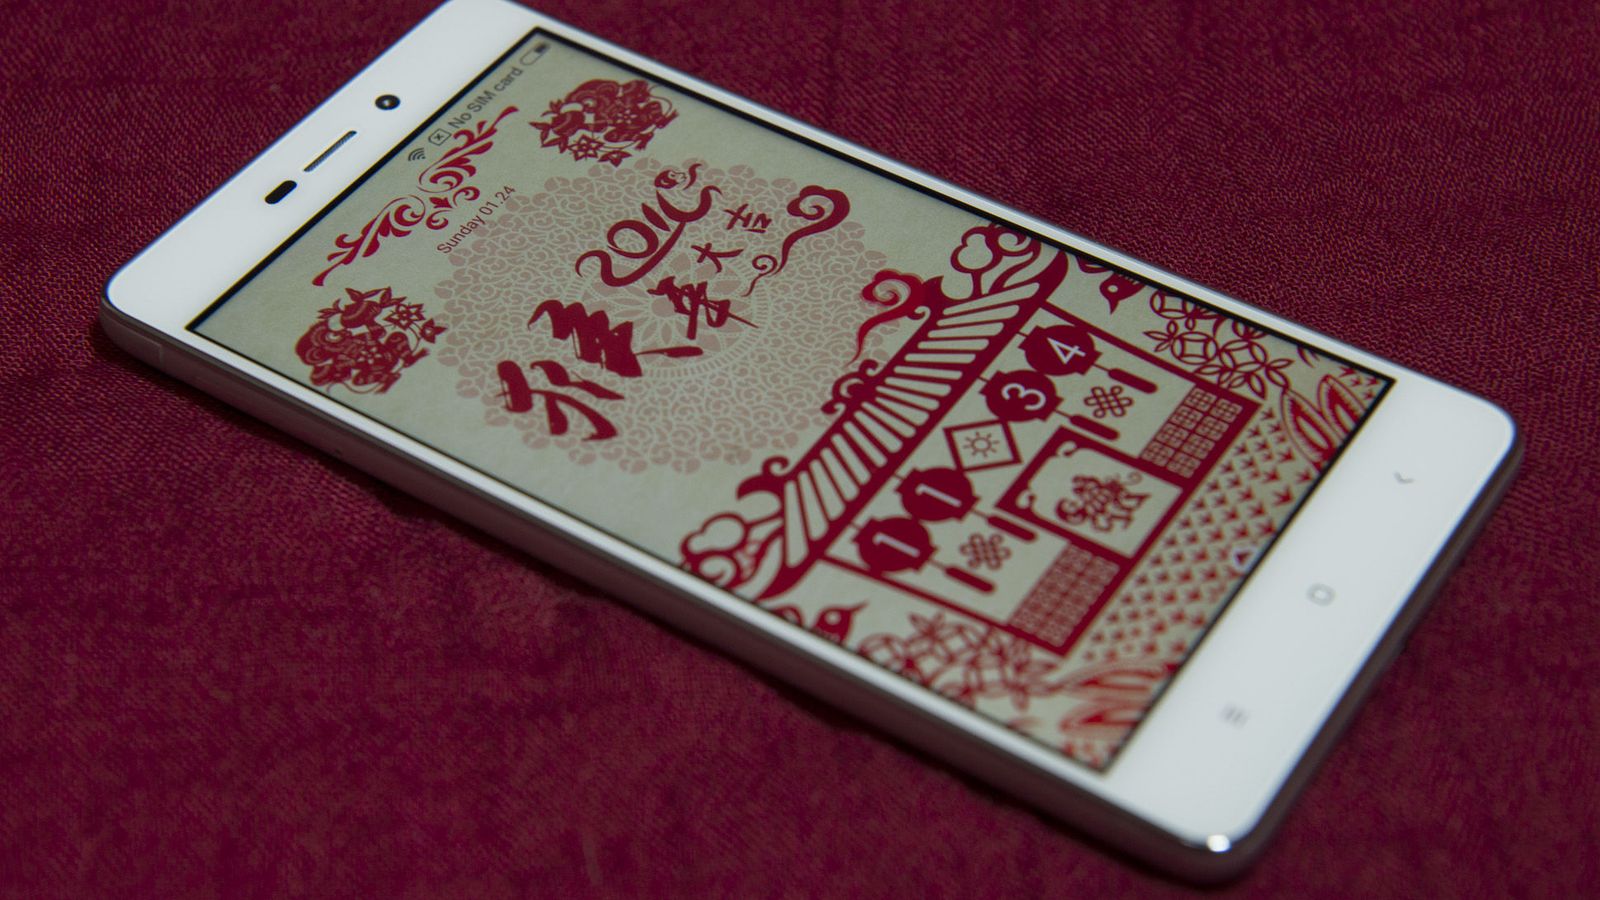 Foto: Xiaomi Redmi 3. (Zigor Aldama)